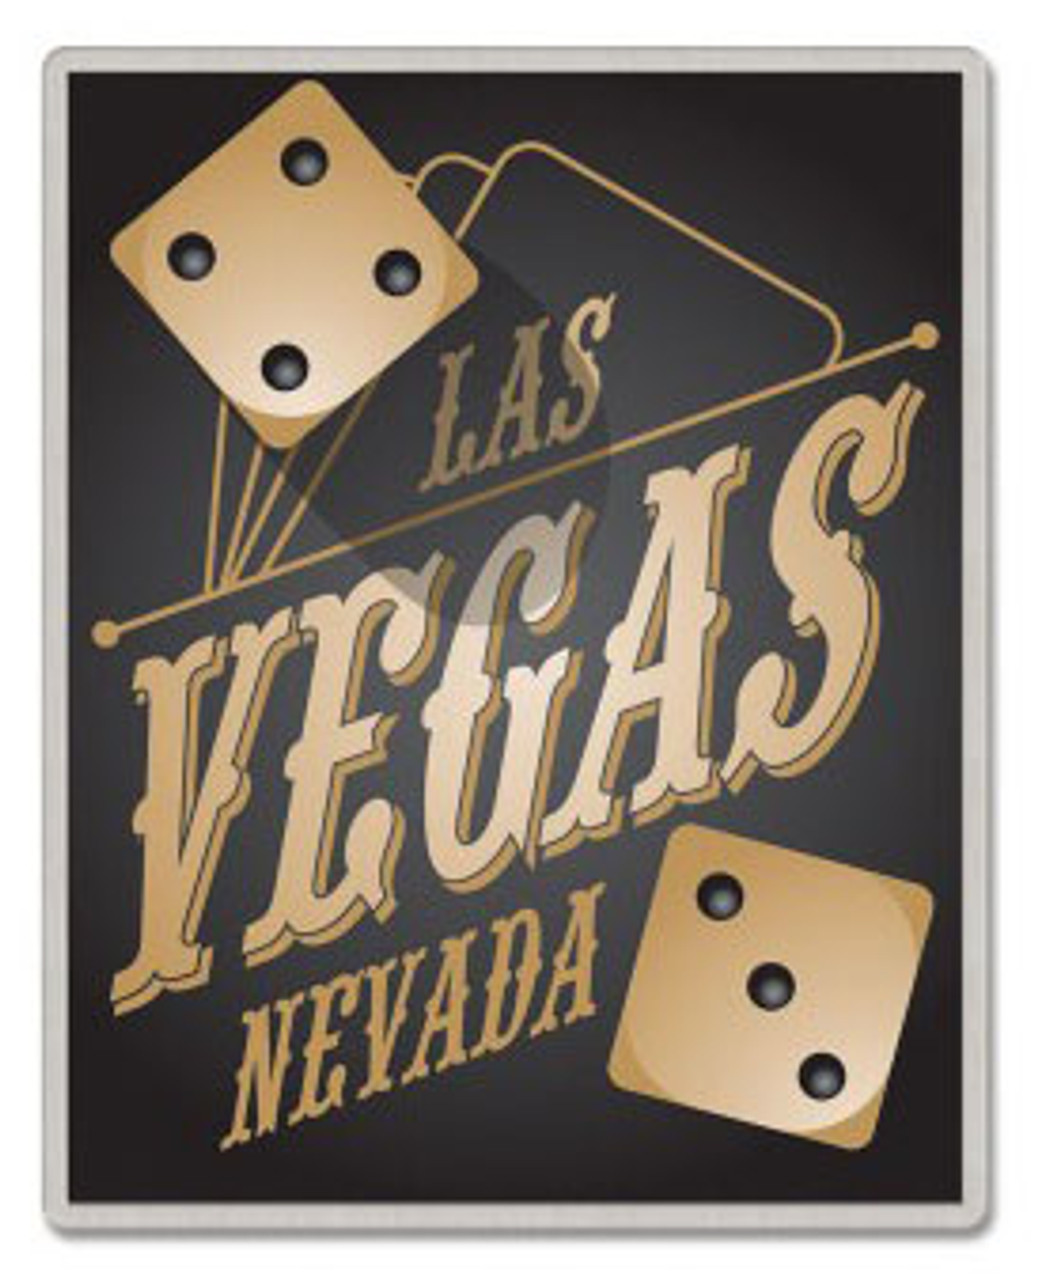 Pin on Las Vegas